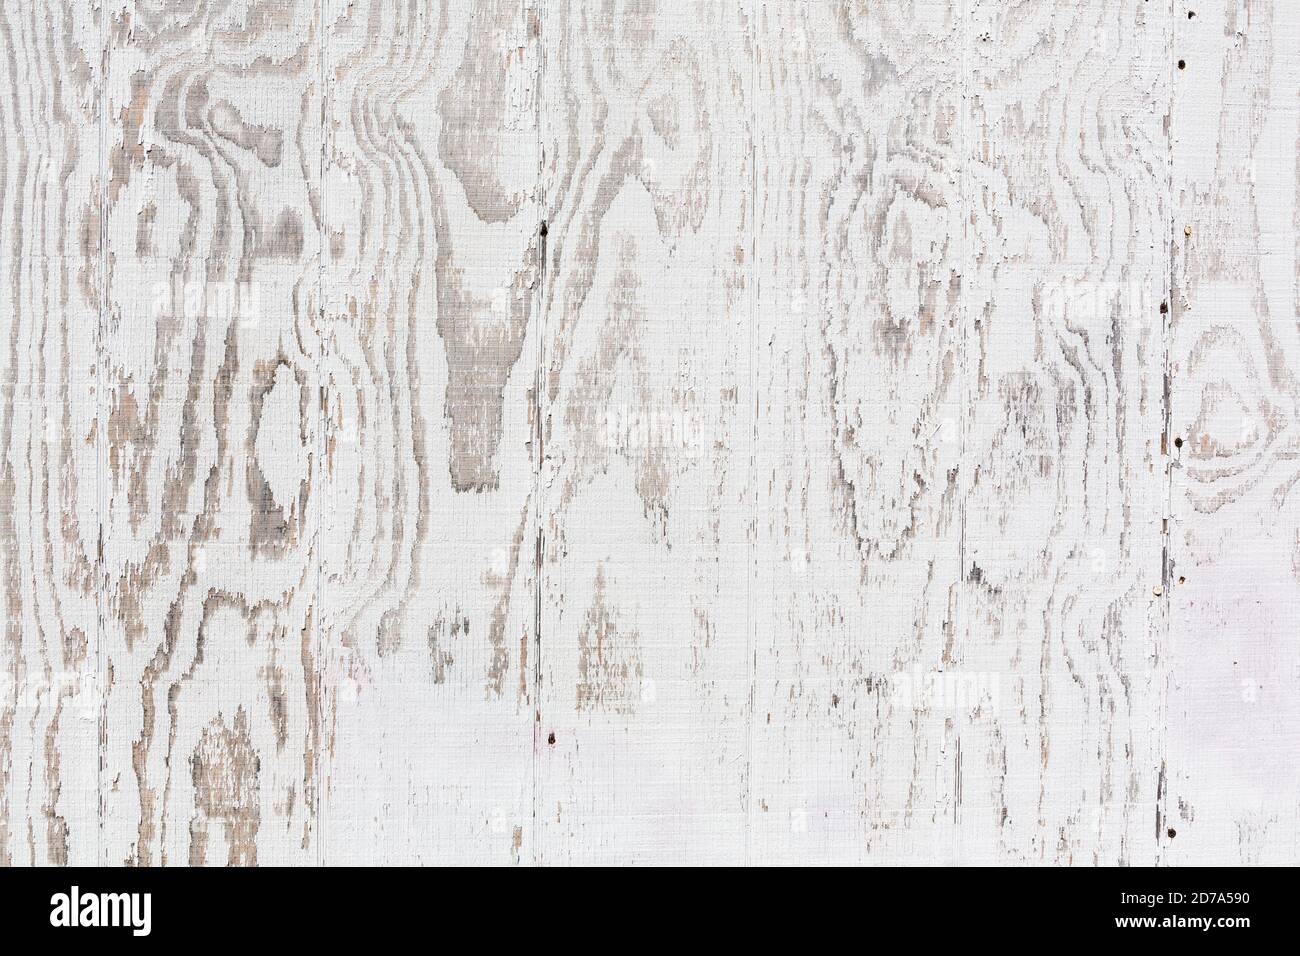 Vue rapprochée de la surface d'un mur extérieur de contreplaqué peint en blanc qui est décoloré par le temps. Banque D'Images